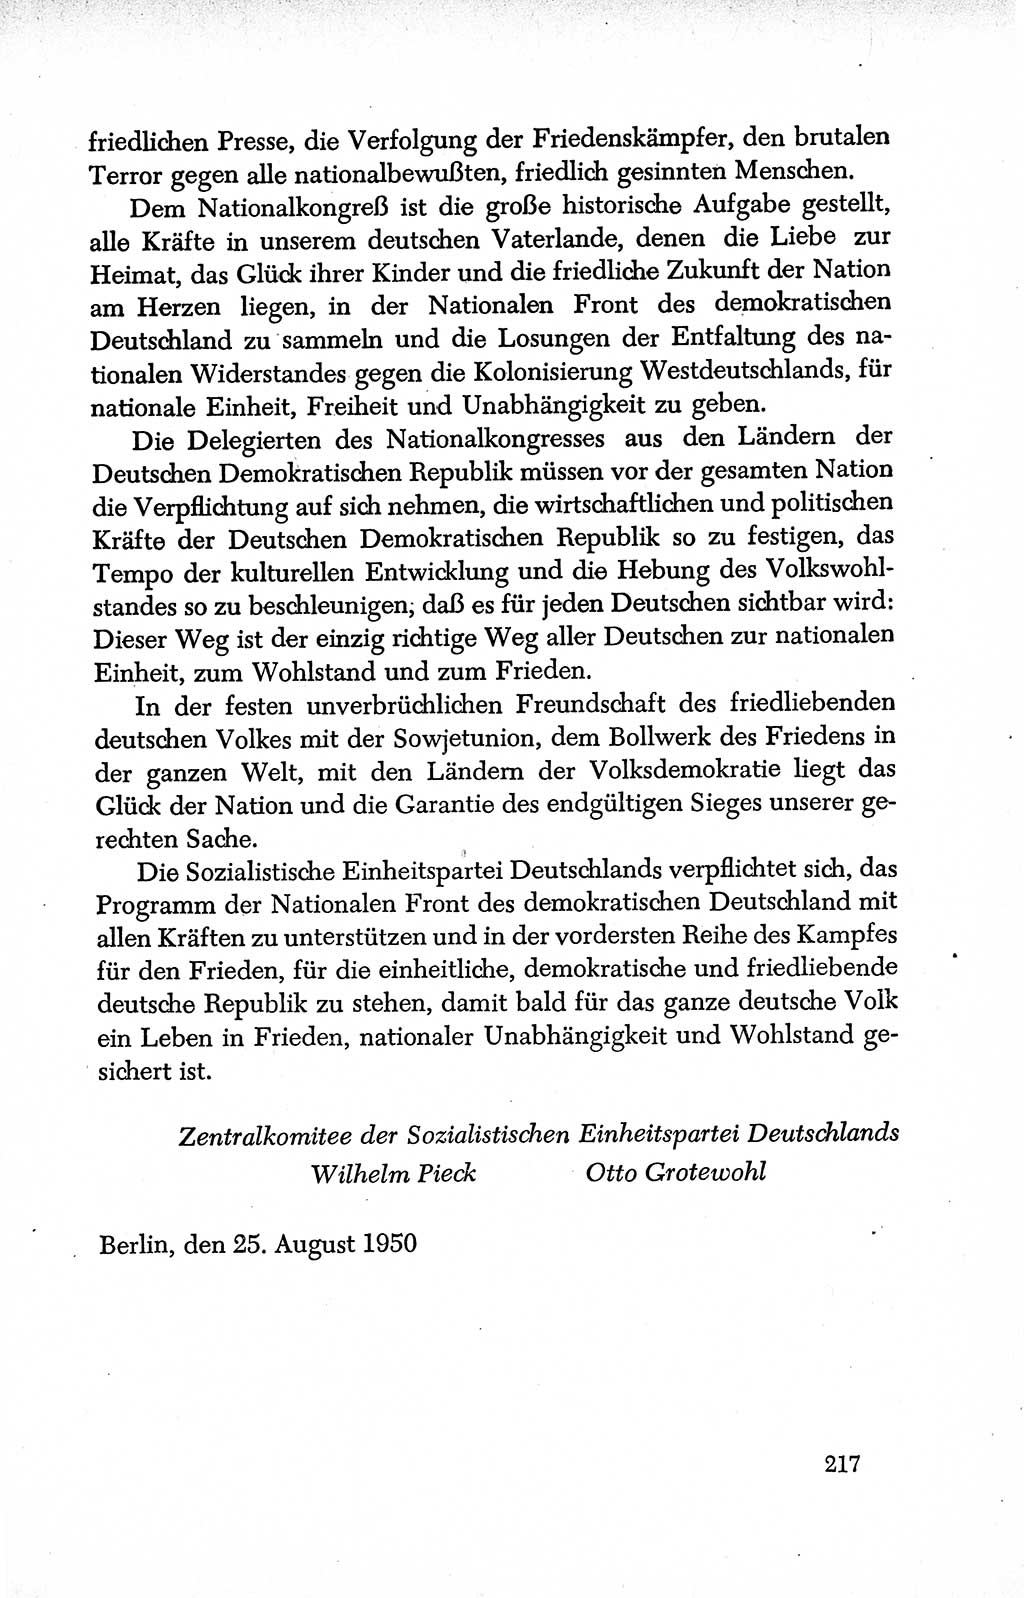 Dokumente der Sozialistischen Einheitspartei Deutschlands (SED) [Deutsche Demokratische Republik (DDR)] 1950-1952, Seite 217 (Dok. SED DDR 1950-1952, S. 217)